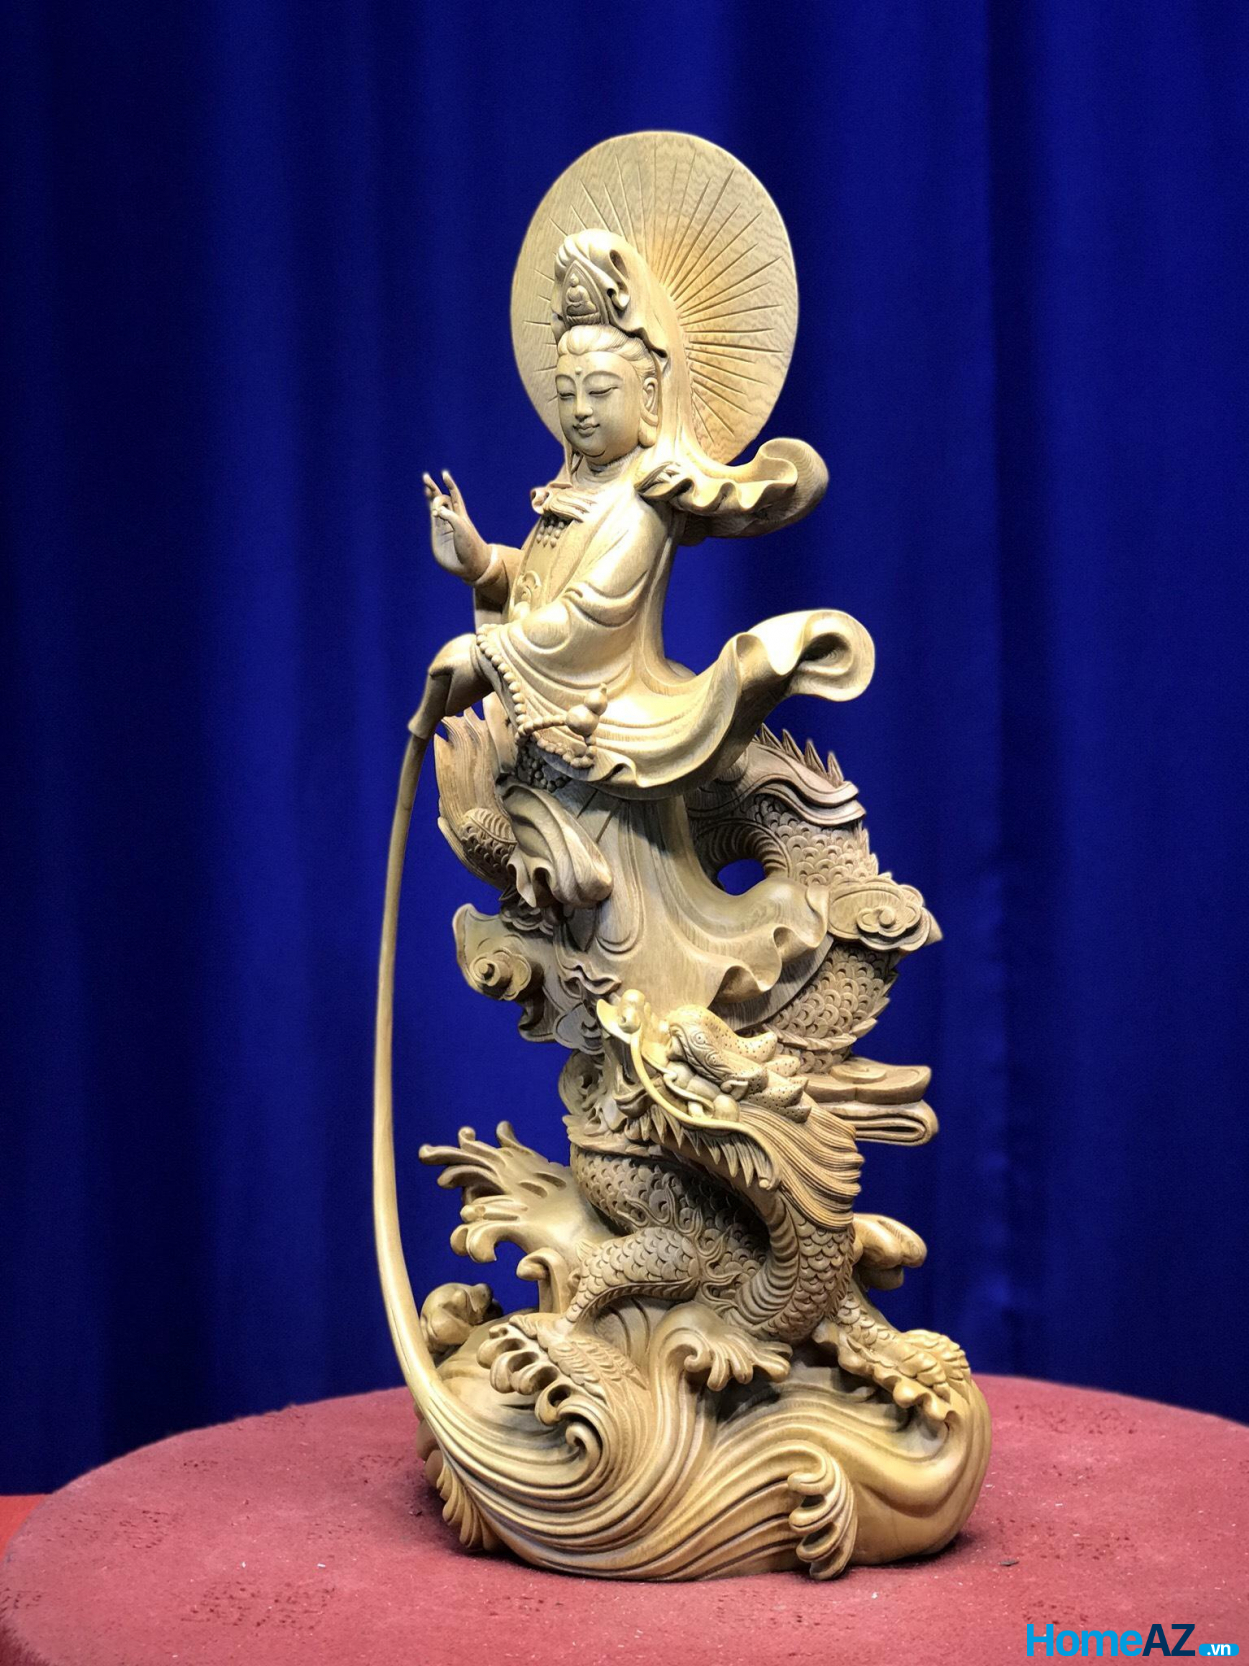 Với góc nghiêng này có thể thấy, tượng Phật Bà Quan Âm thể hiện sức mạnh phổ độ chúng sinh của Ngài vô cùng mạnh mẽ.